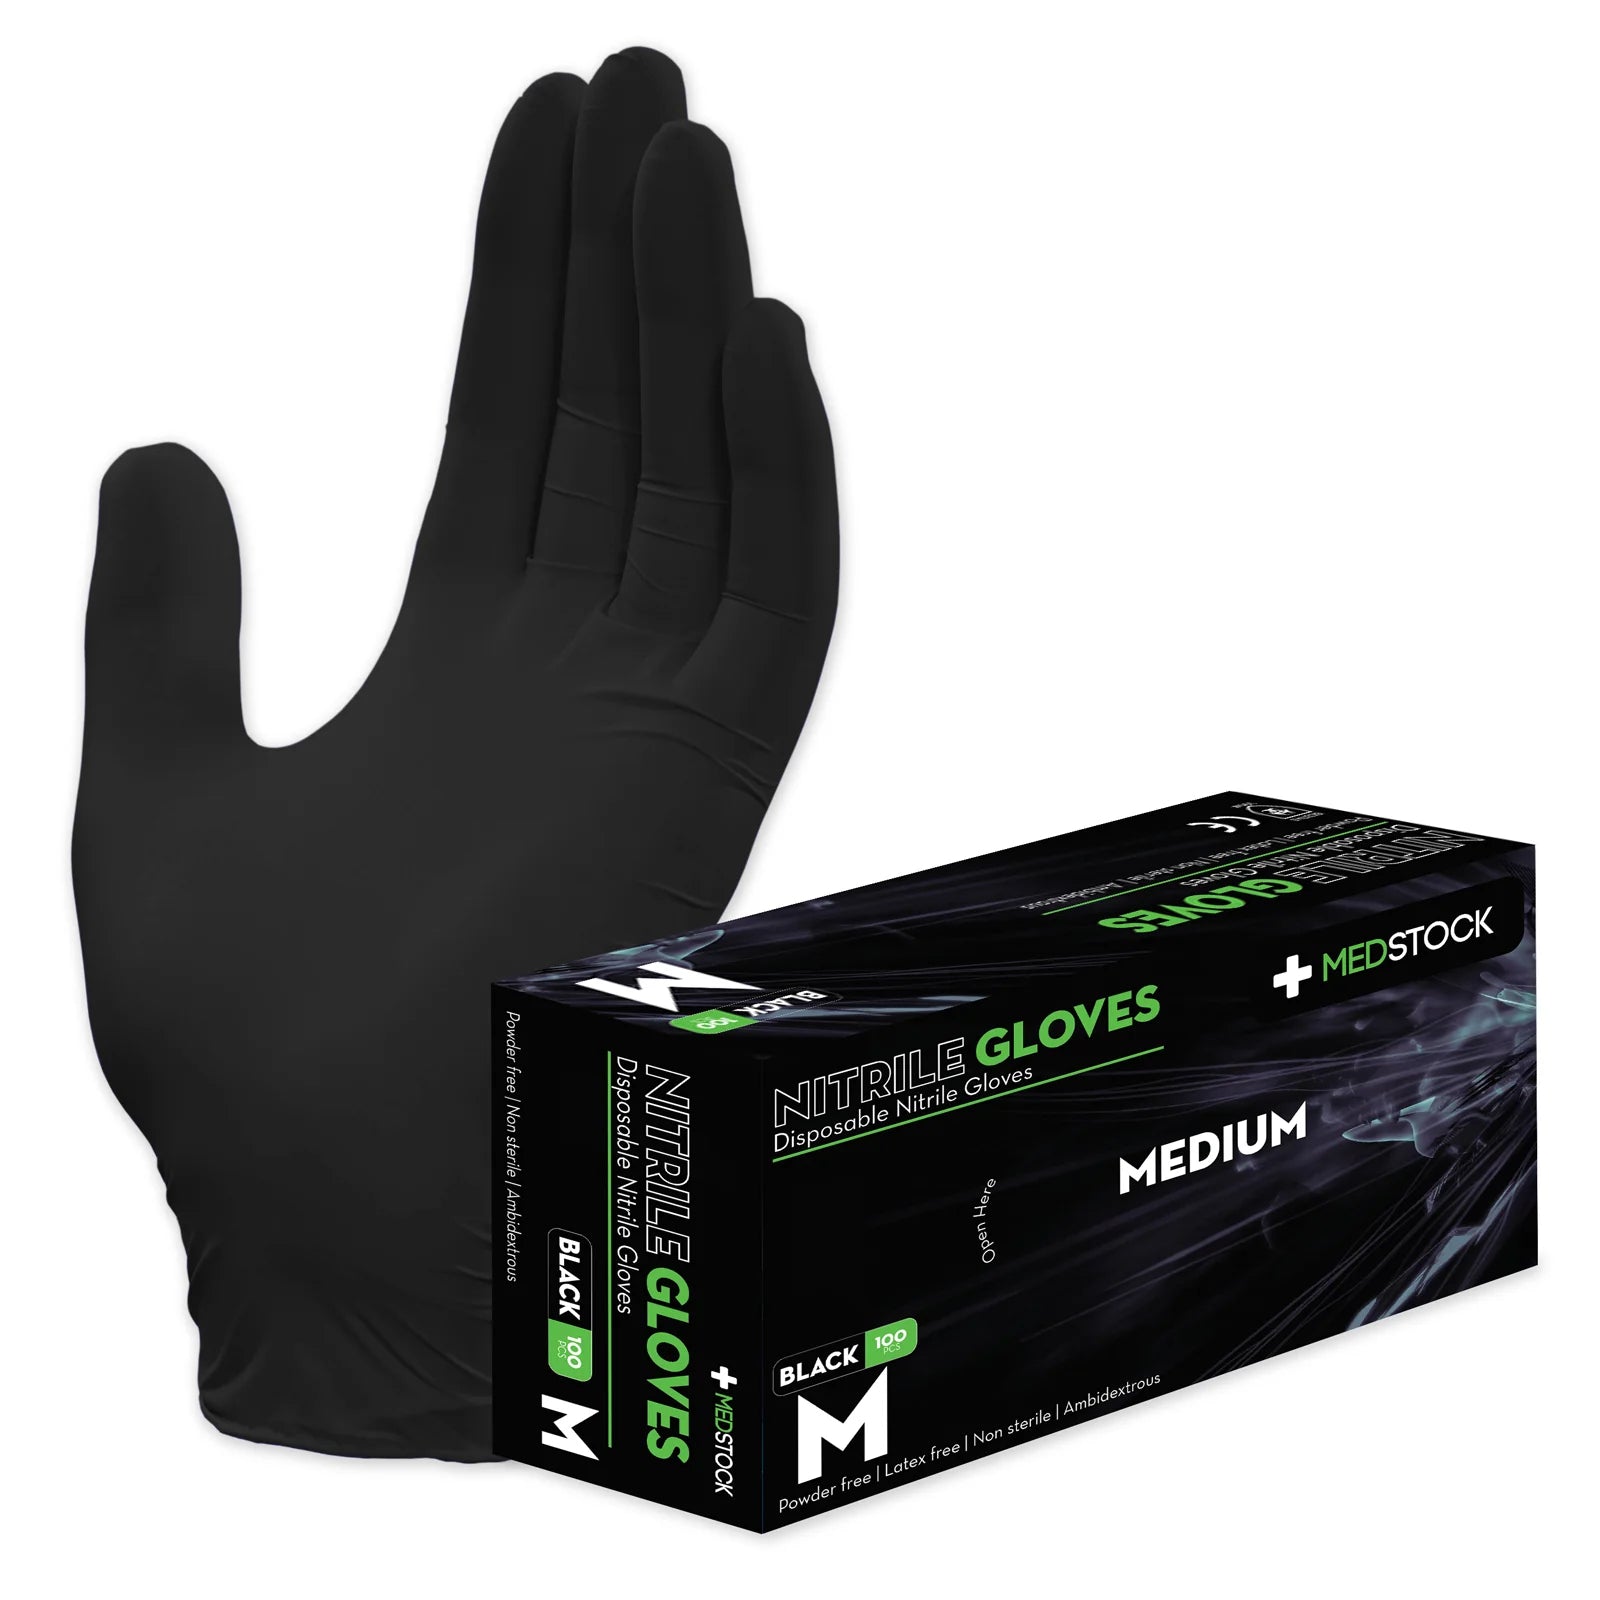 Medstock Black Disposable Nitrile Gloves -Box of 100